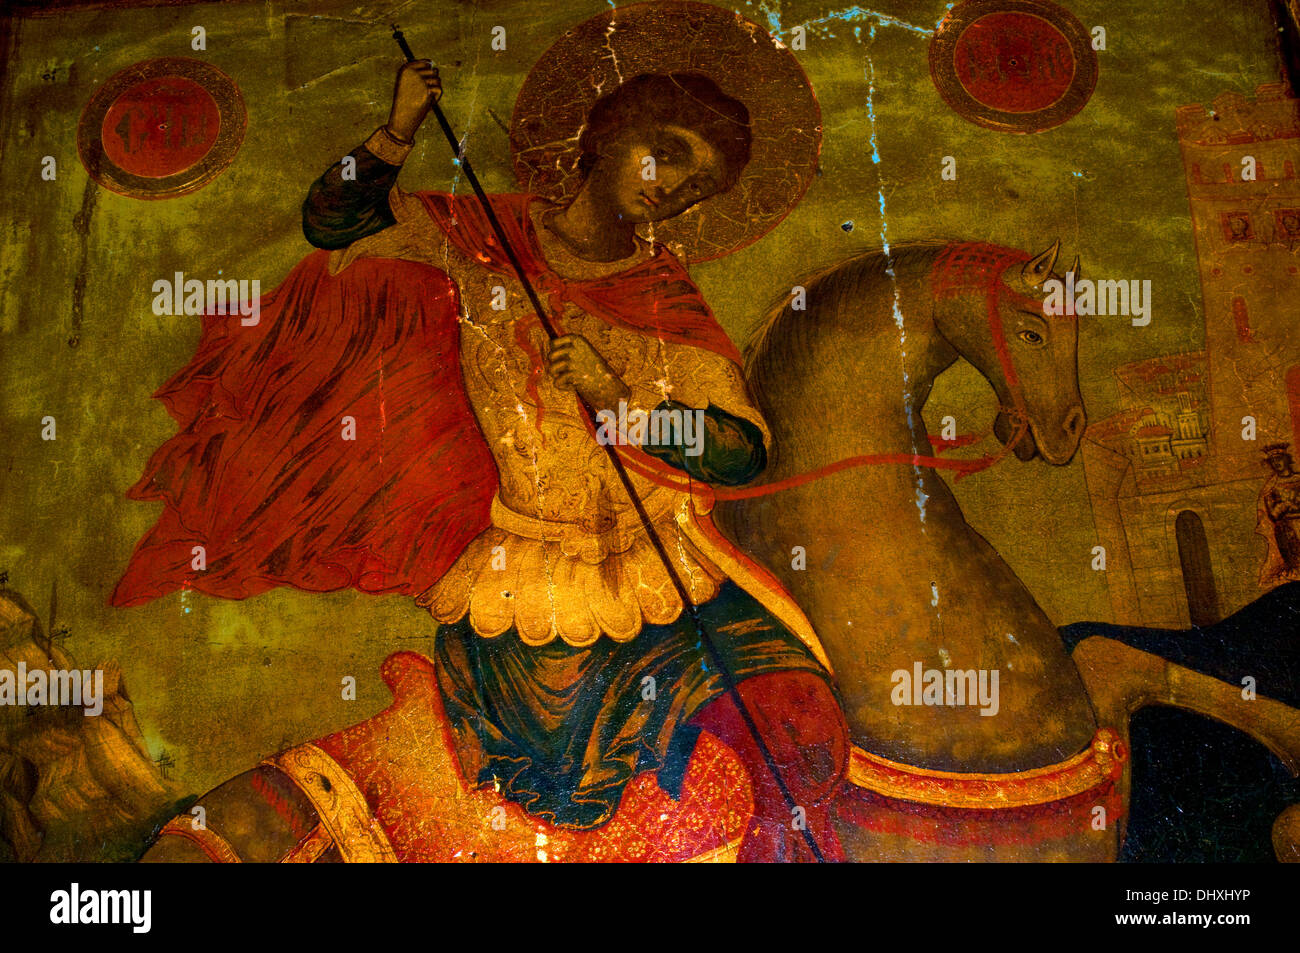 Icône de St George à califourchon sur sa monture avec lance à main est terrassant le dragon et se trouve dans l'Église orthodoxe de Sevlievo Bulgarie Banque D'Images